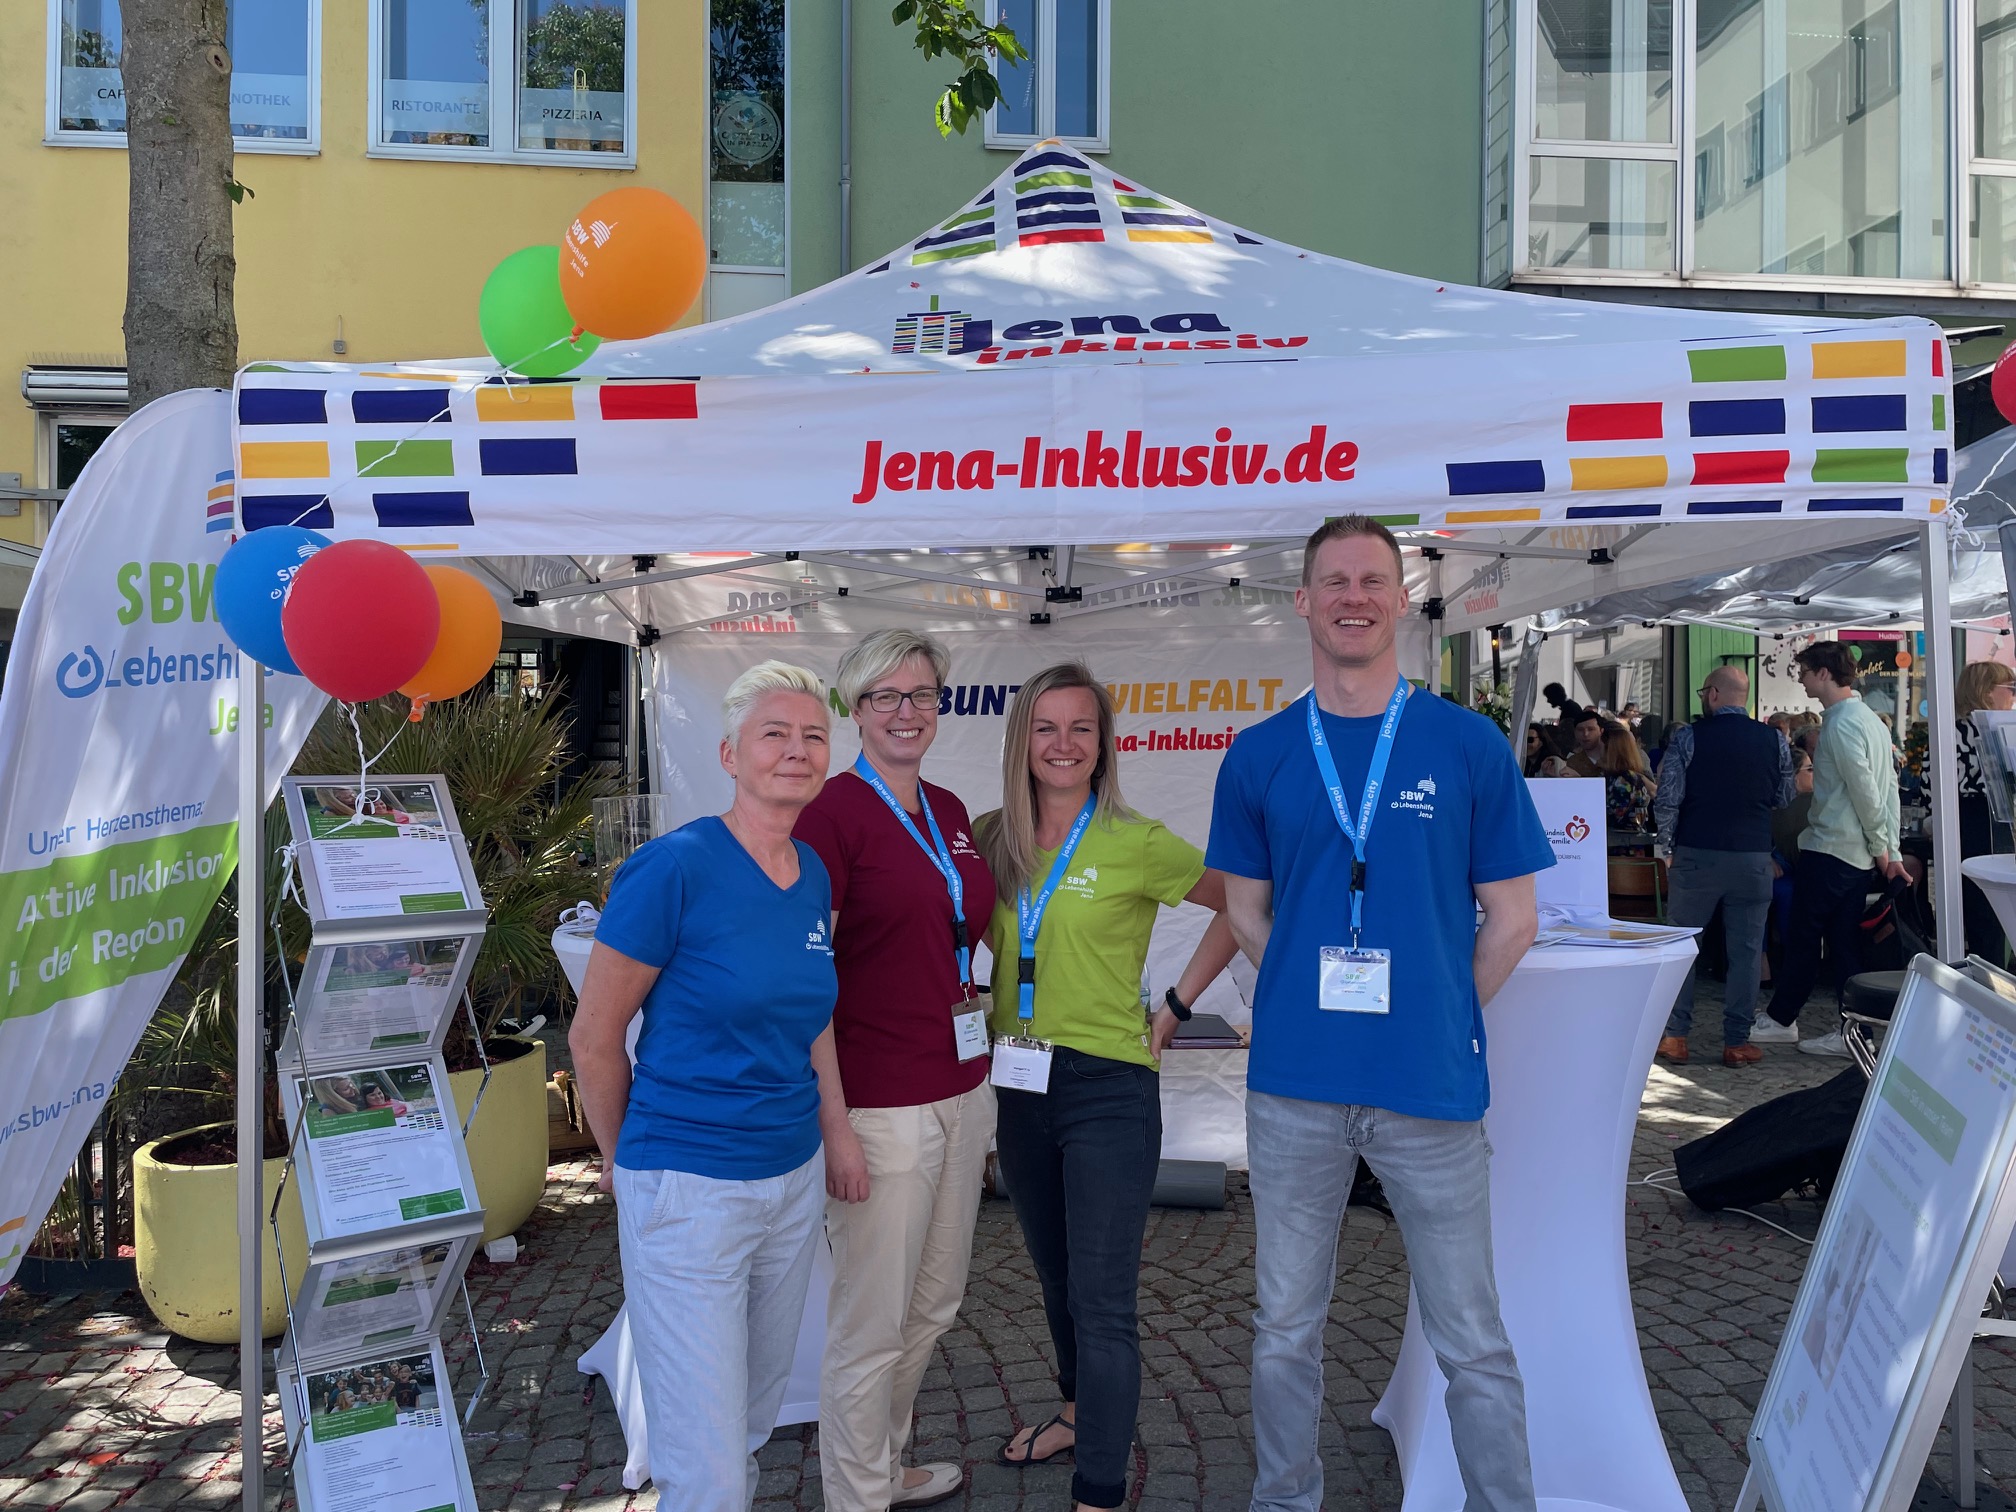 Vier Personen in farbigen T-Shirts stehen freundlich lächelnd vor einem Pavillion mit der Aufschrift Jena-Inklusiv